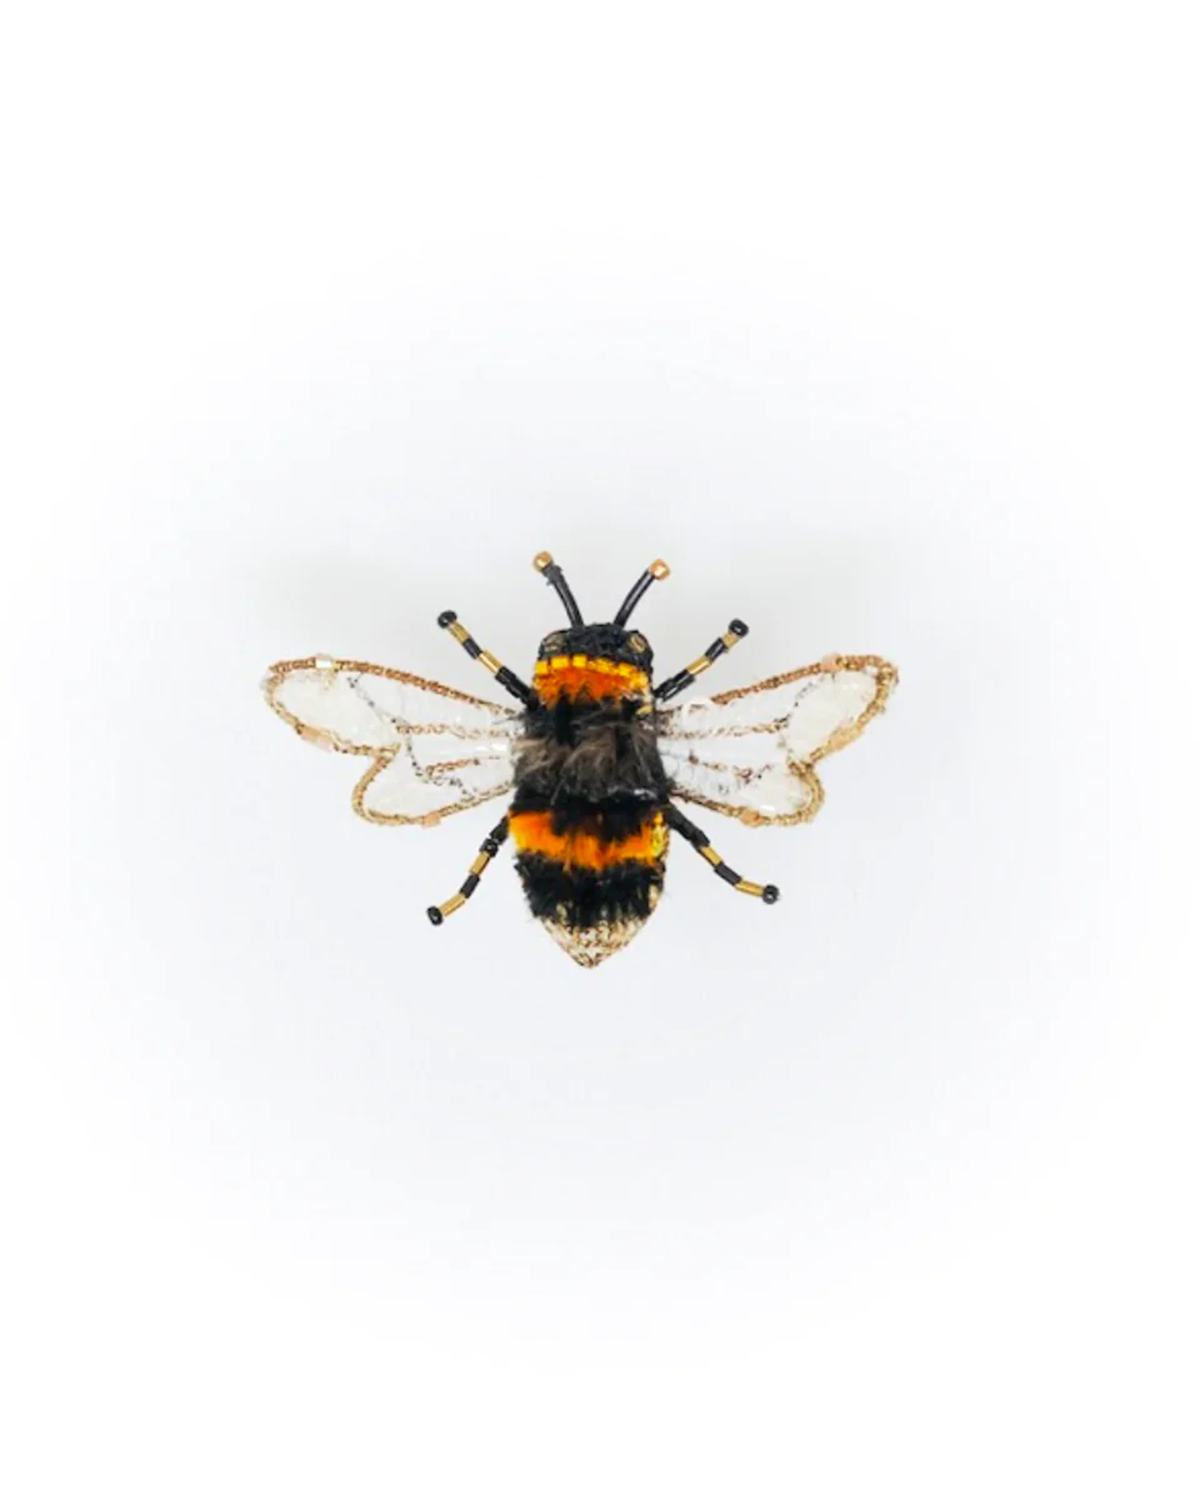 Humble Bee Brooch Pin